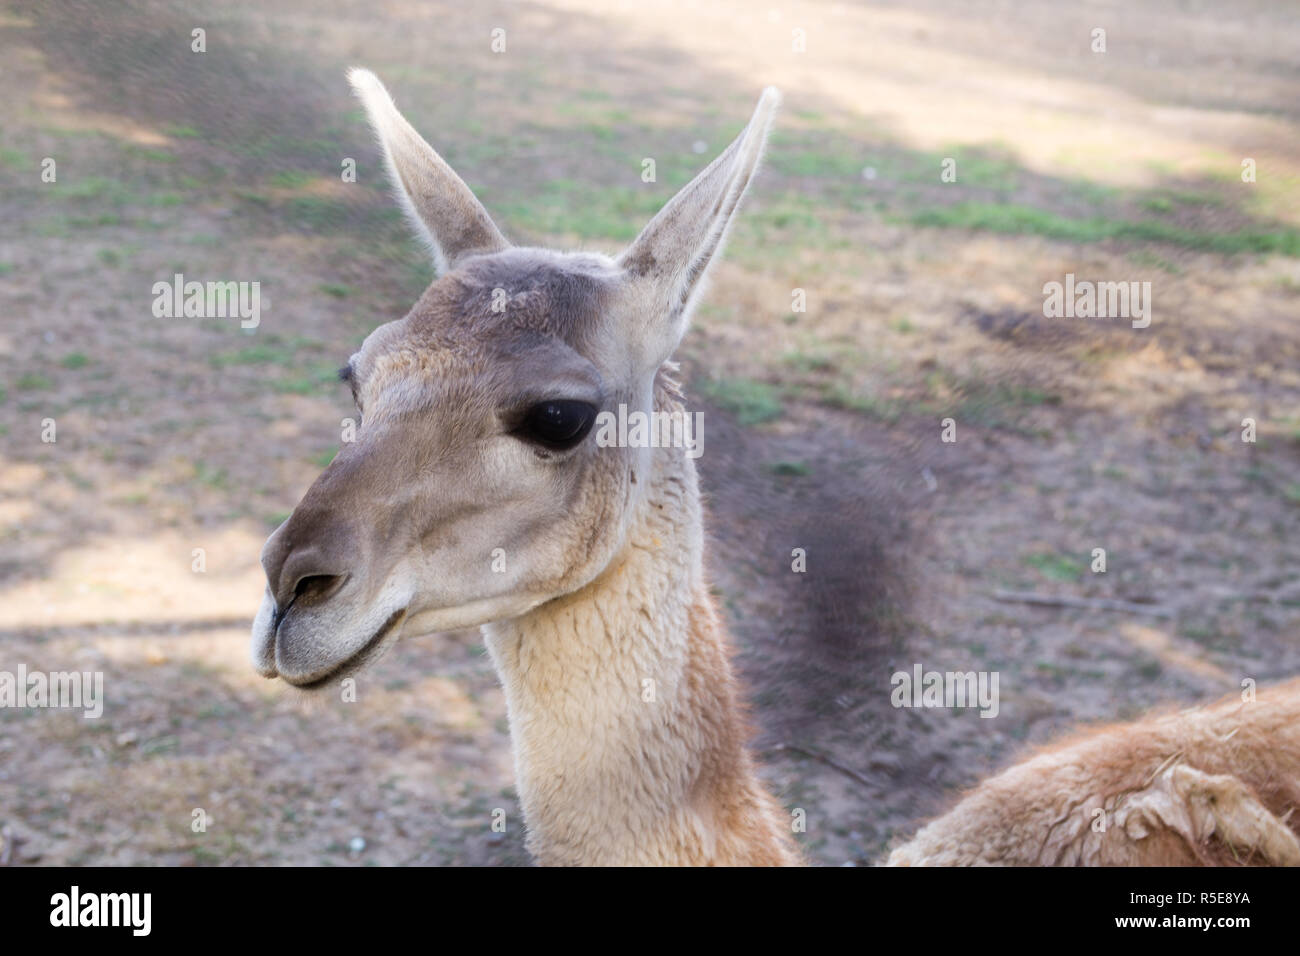 Llama's charismatic head close-up at the zoo Stock Photo